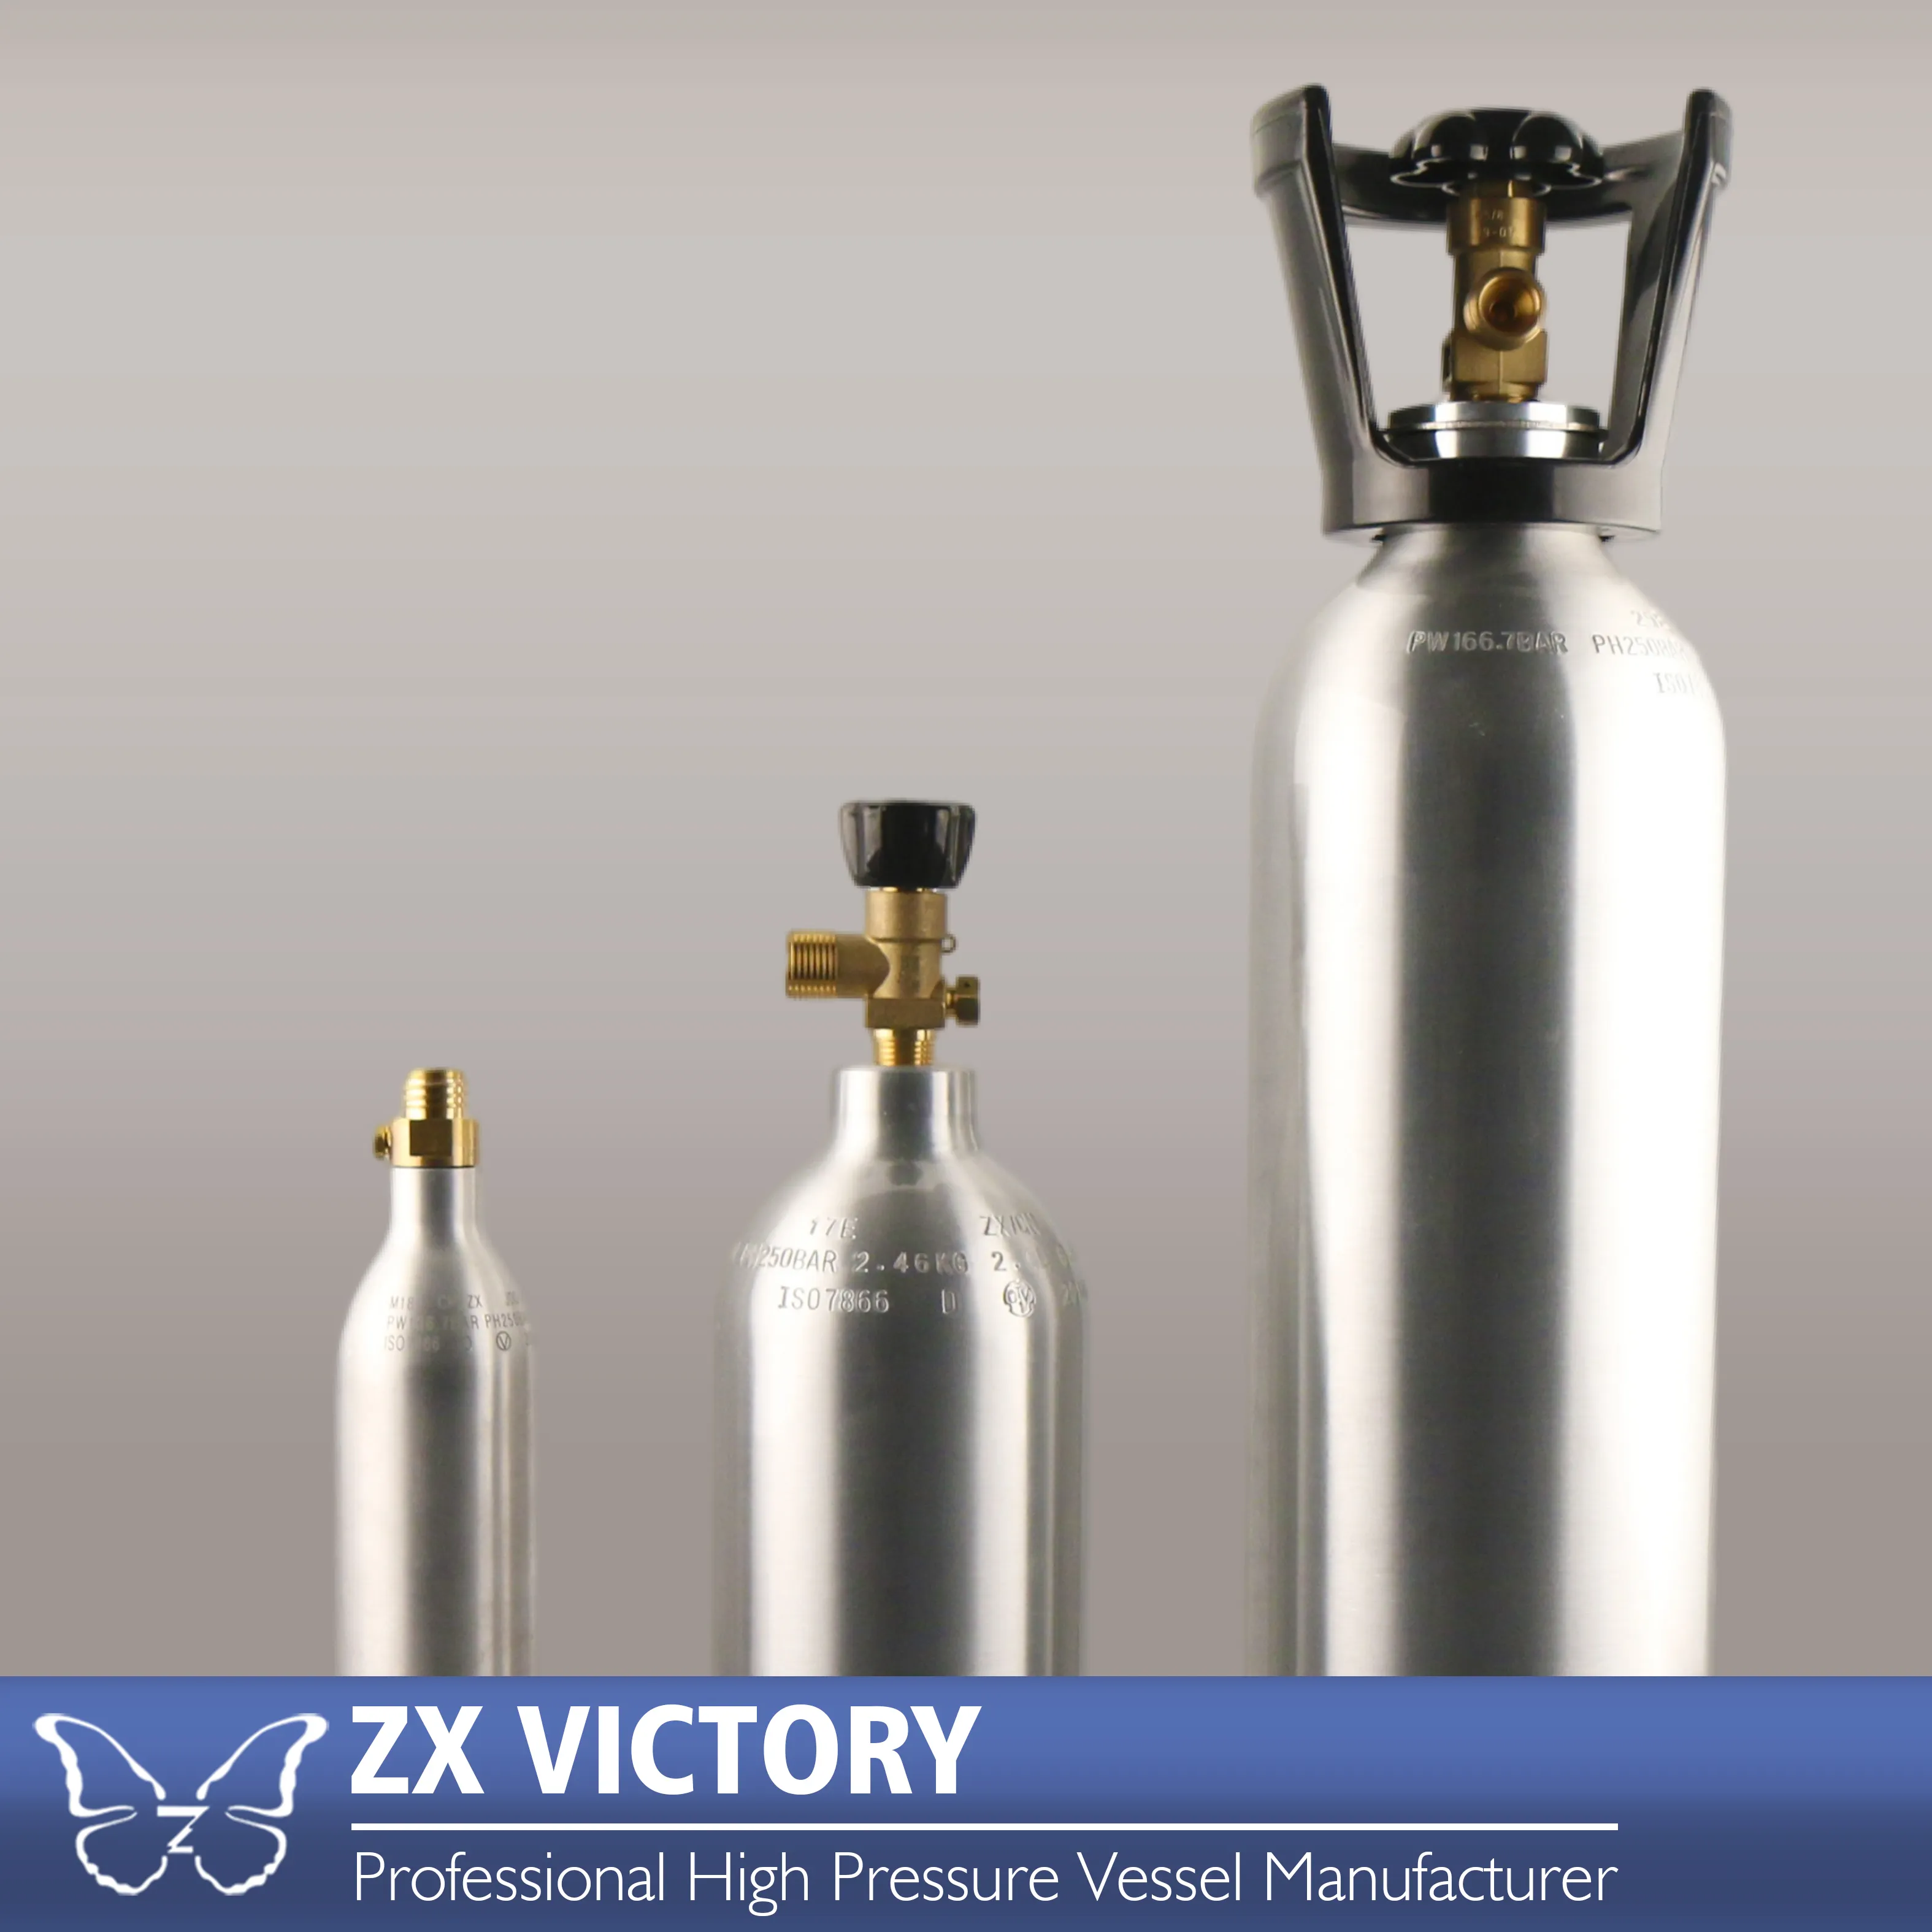 Botella cilíndrica de Gas y aluminio para máquina de refrescos y bebidas, recipiente de alta presión de 0,29 L-21,5 L, venta directa de fábrica